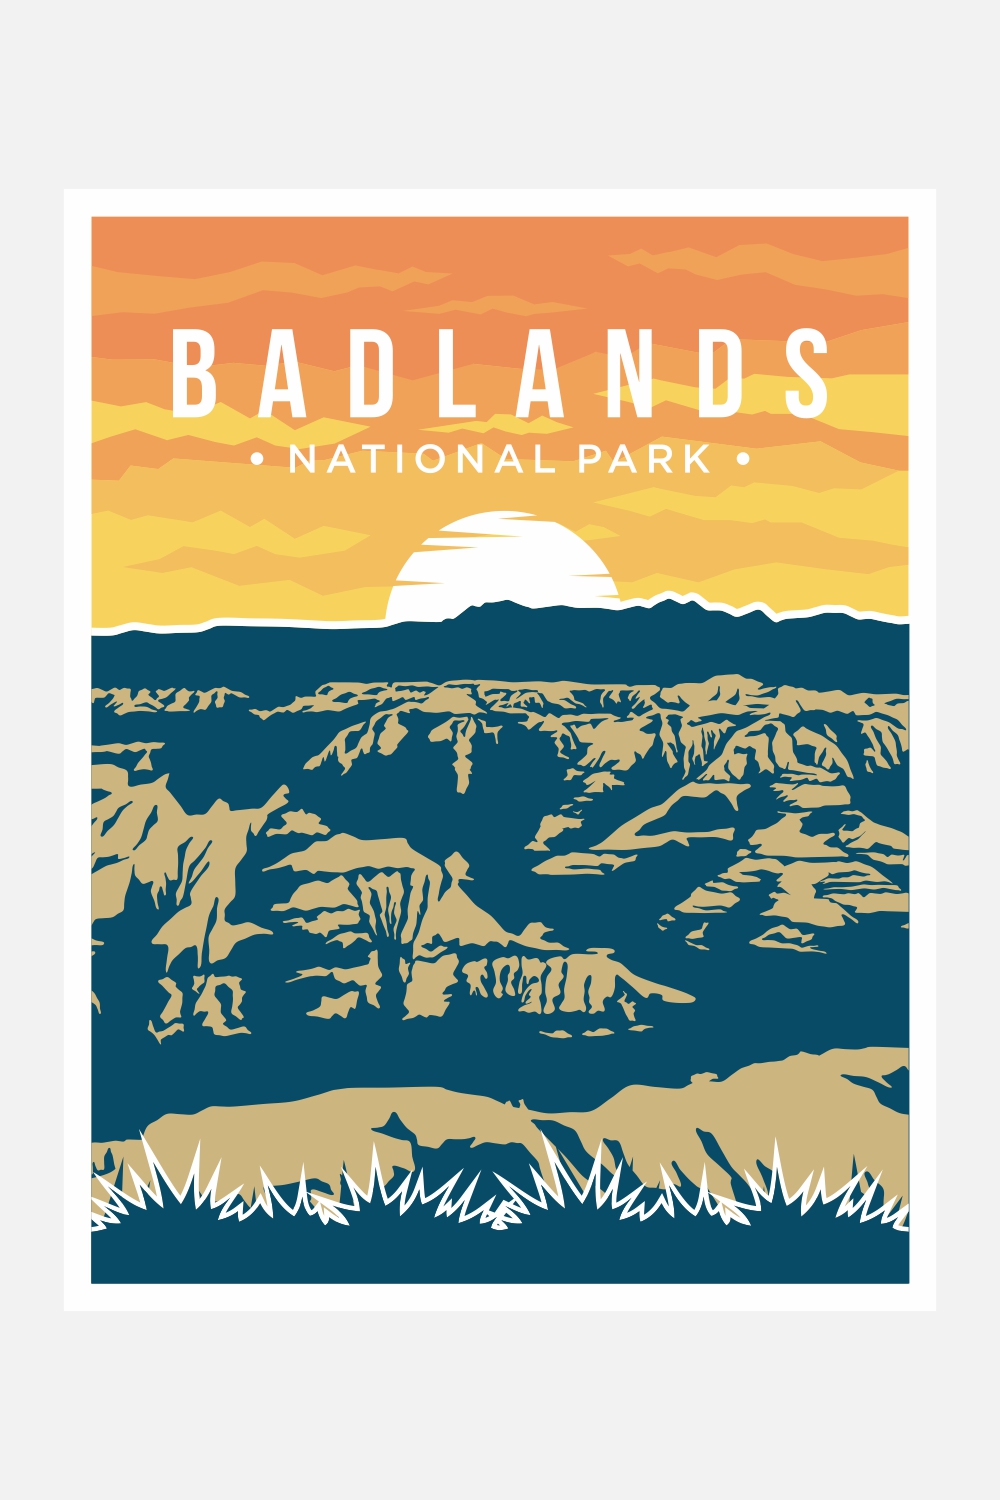 Badlands National Park poster vector illustration design - only $8 pinterest preview image.